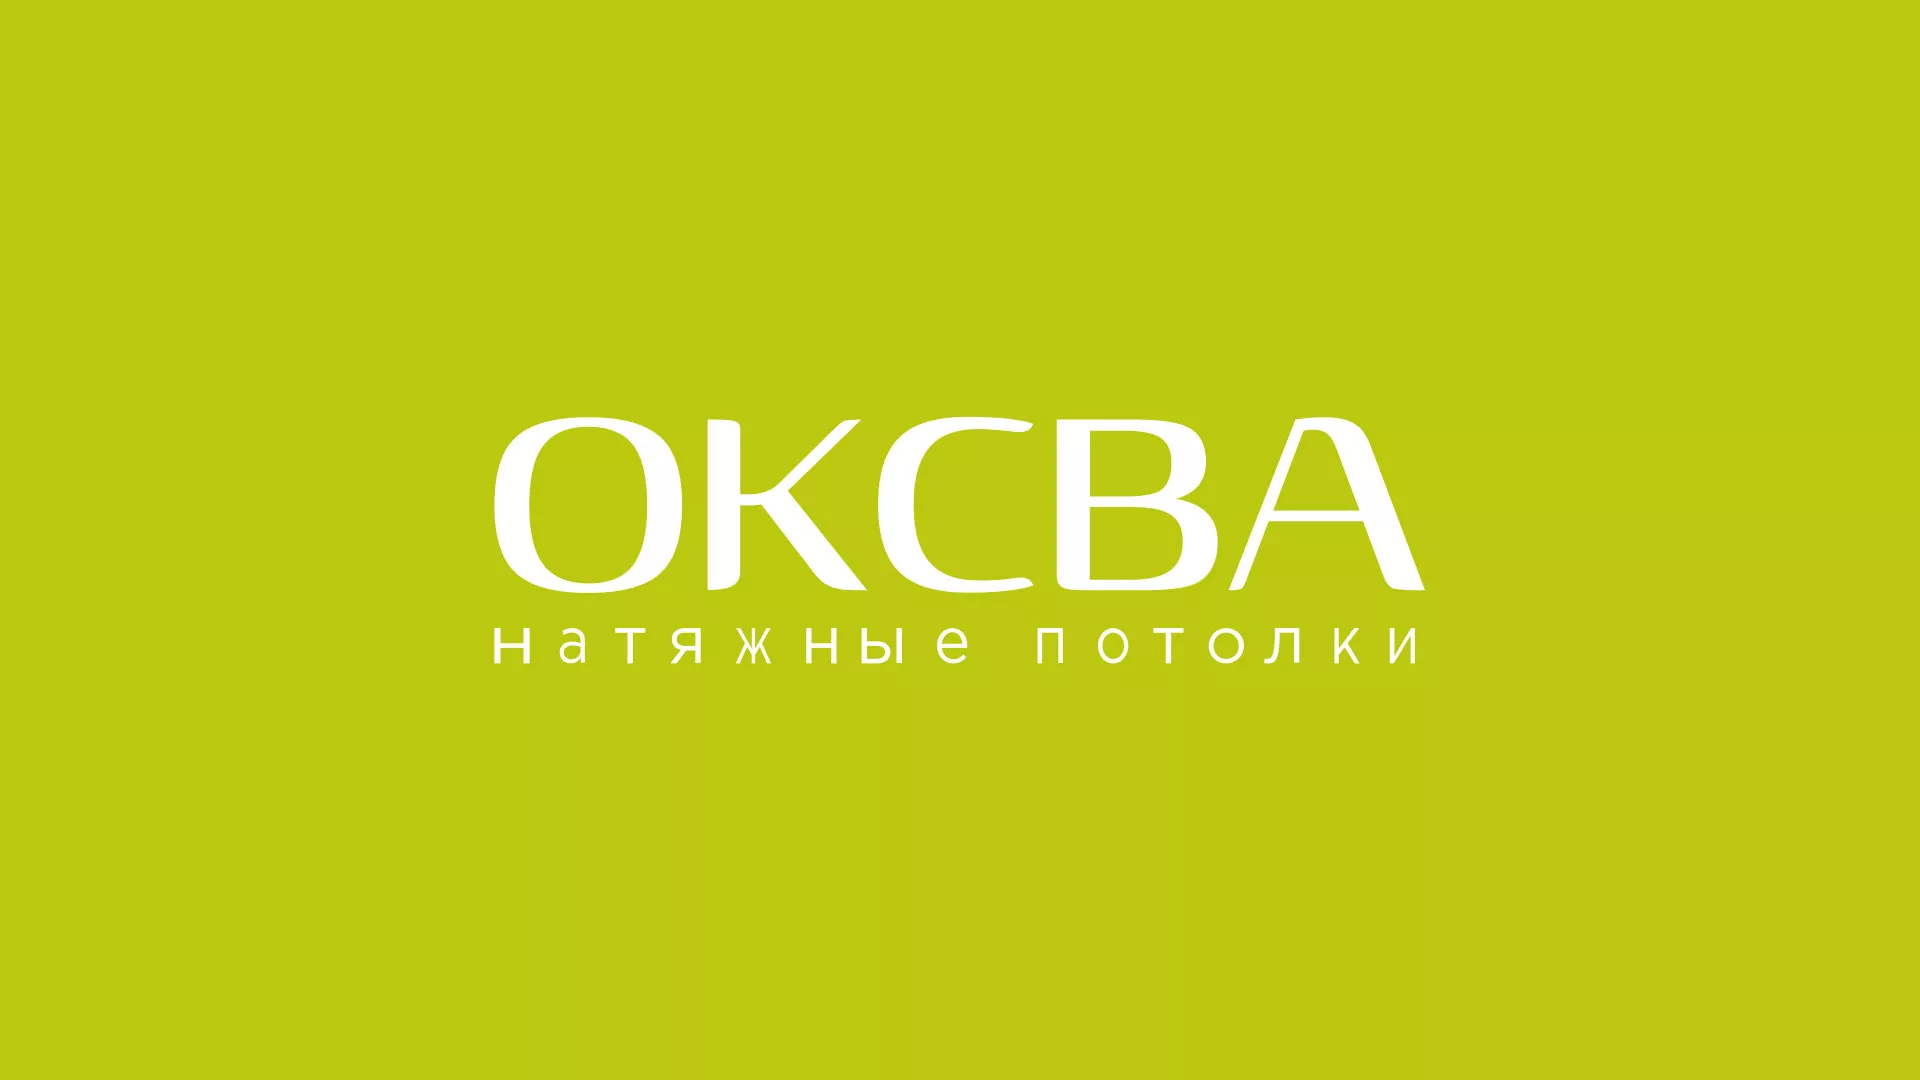 Создание сайта по продаже натяжных потолков для компании «ОКСВА» в Гдове